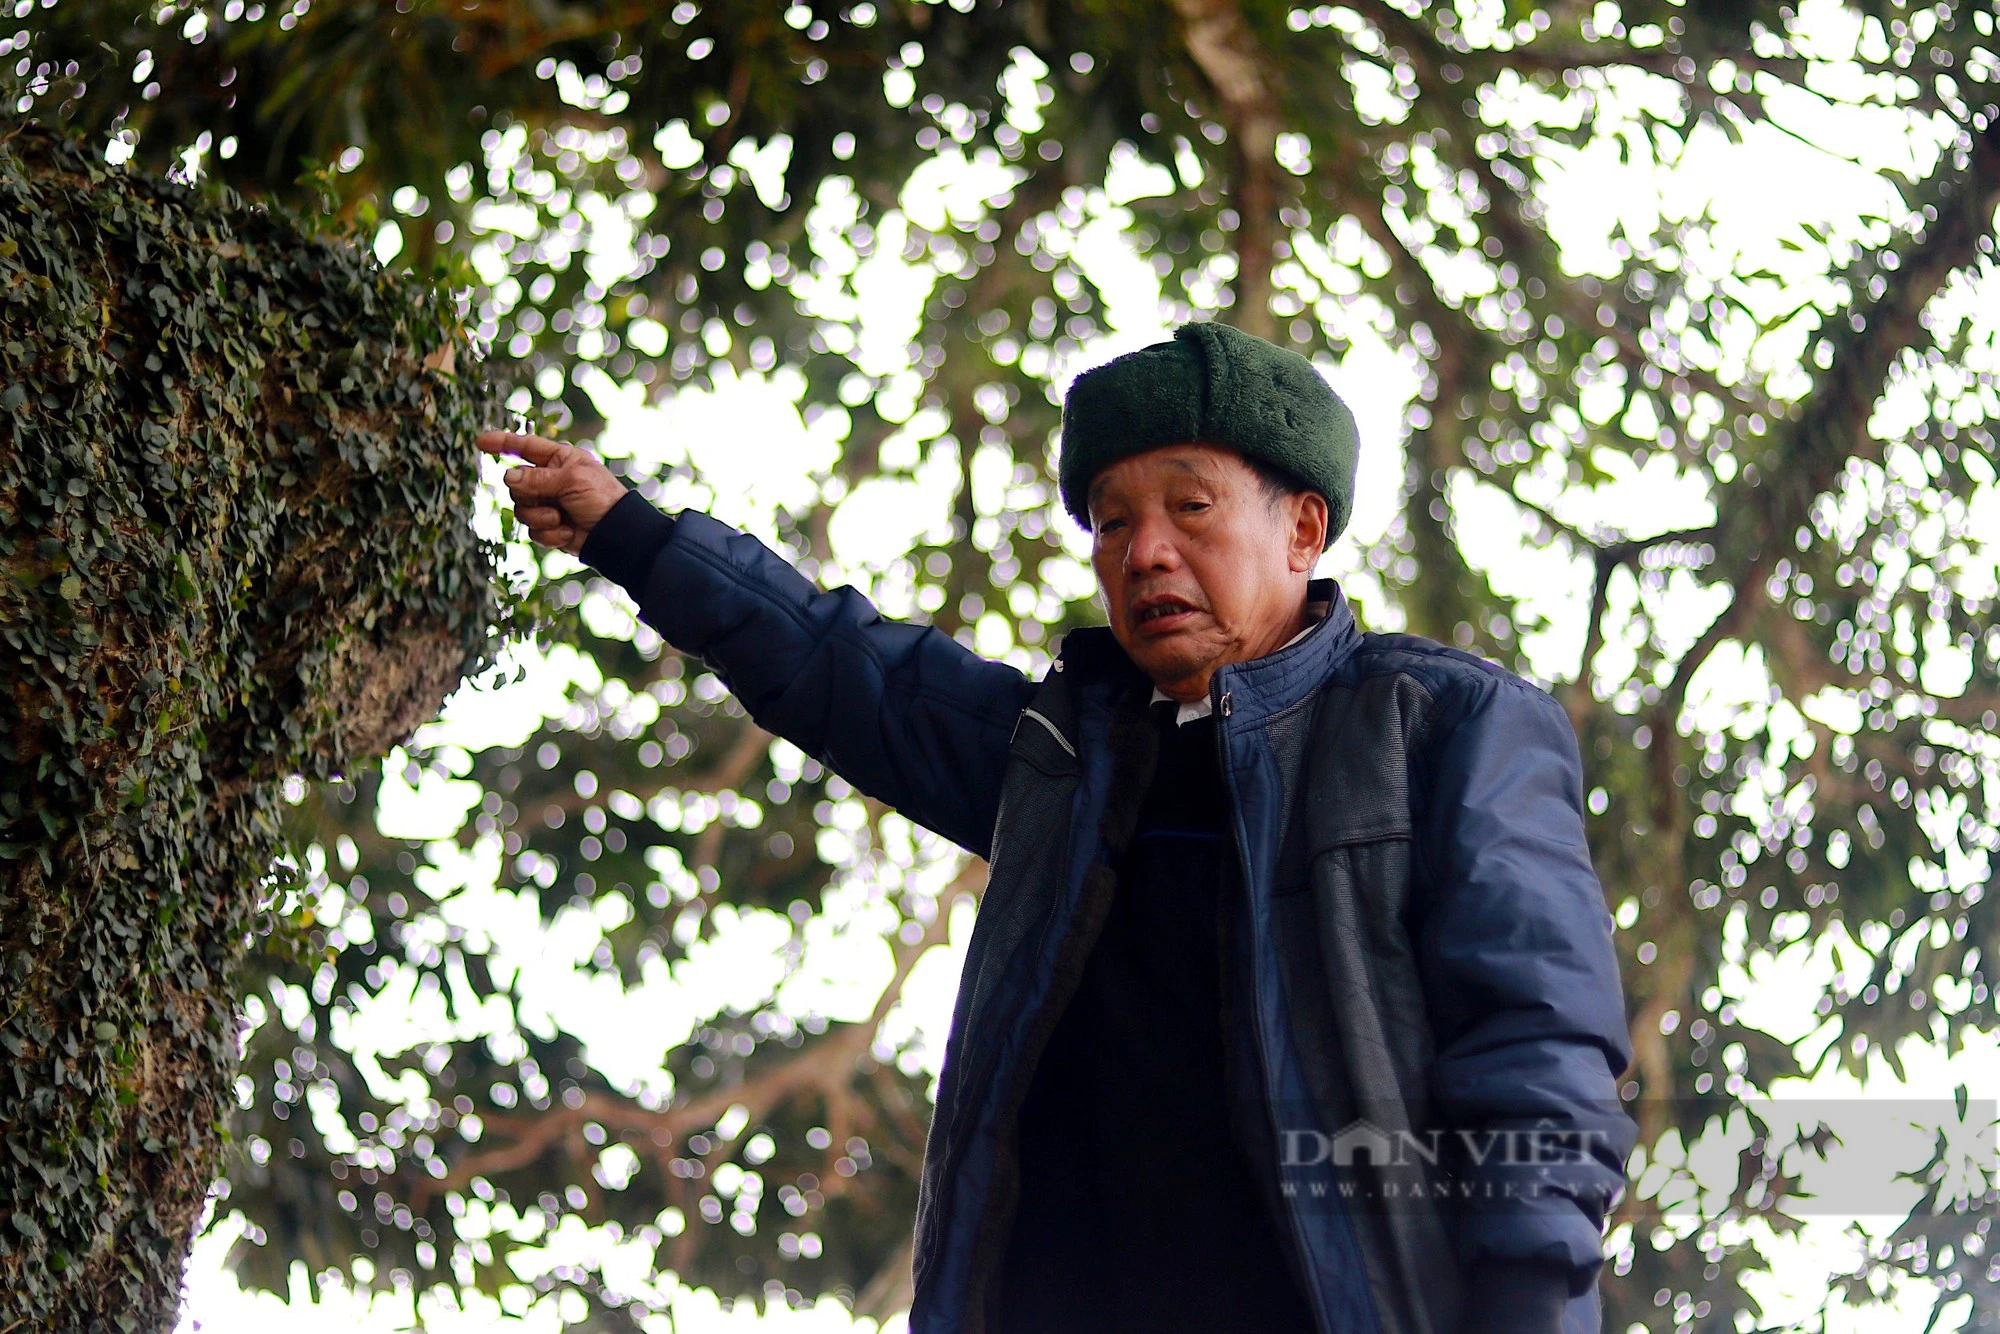 Cây trôi hơn 400 tuổi ở Hà Tĩnh được cả làng xem như báu vật cùng nhau bảo vệ - Ảnh 8.